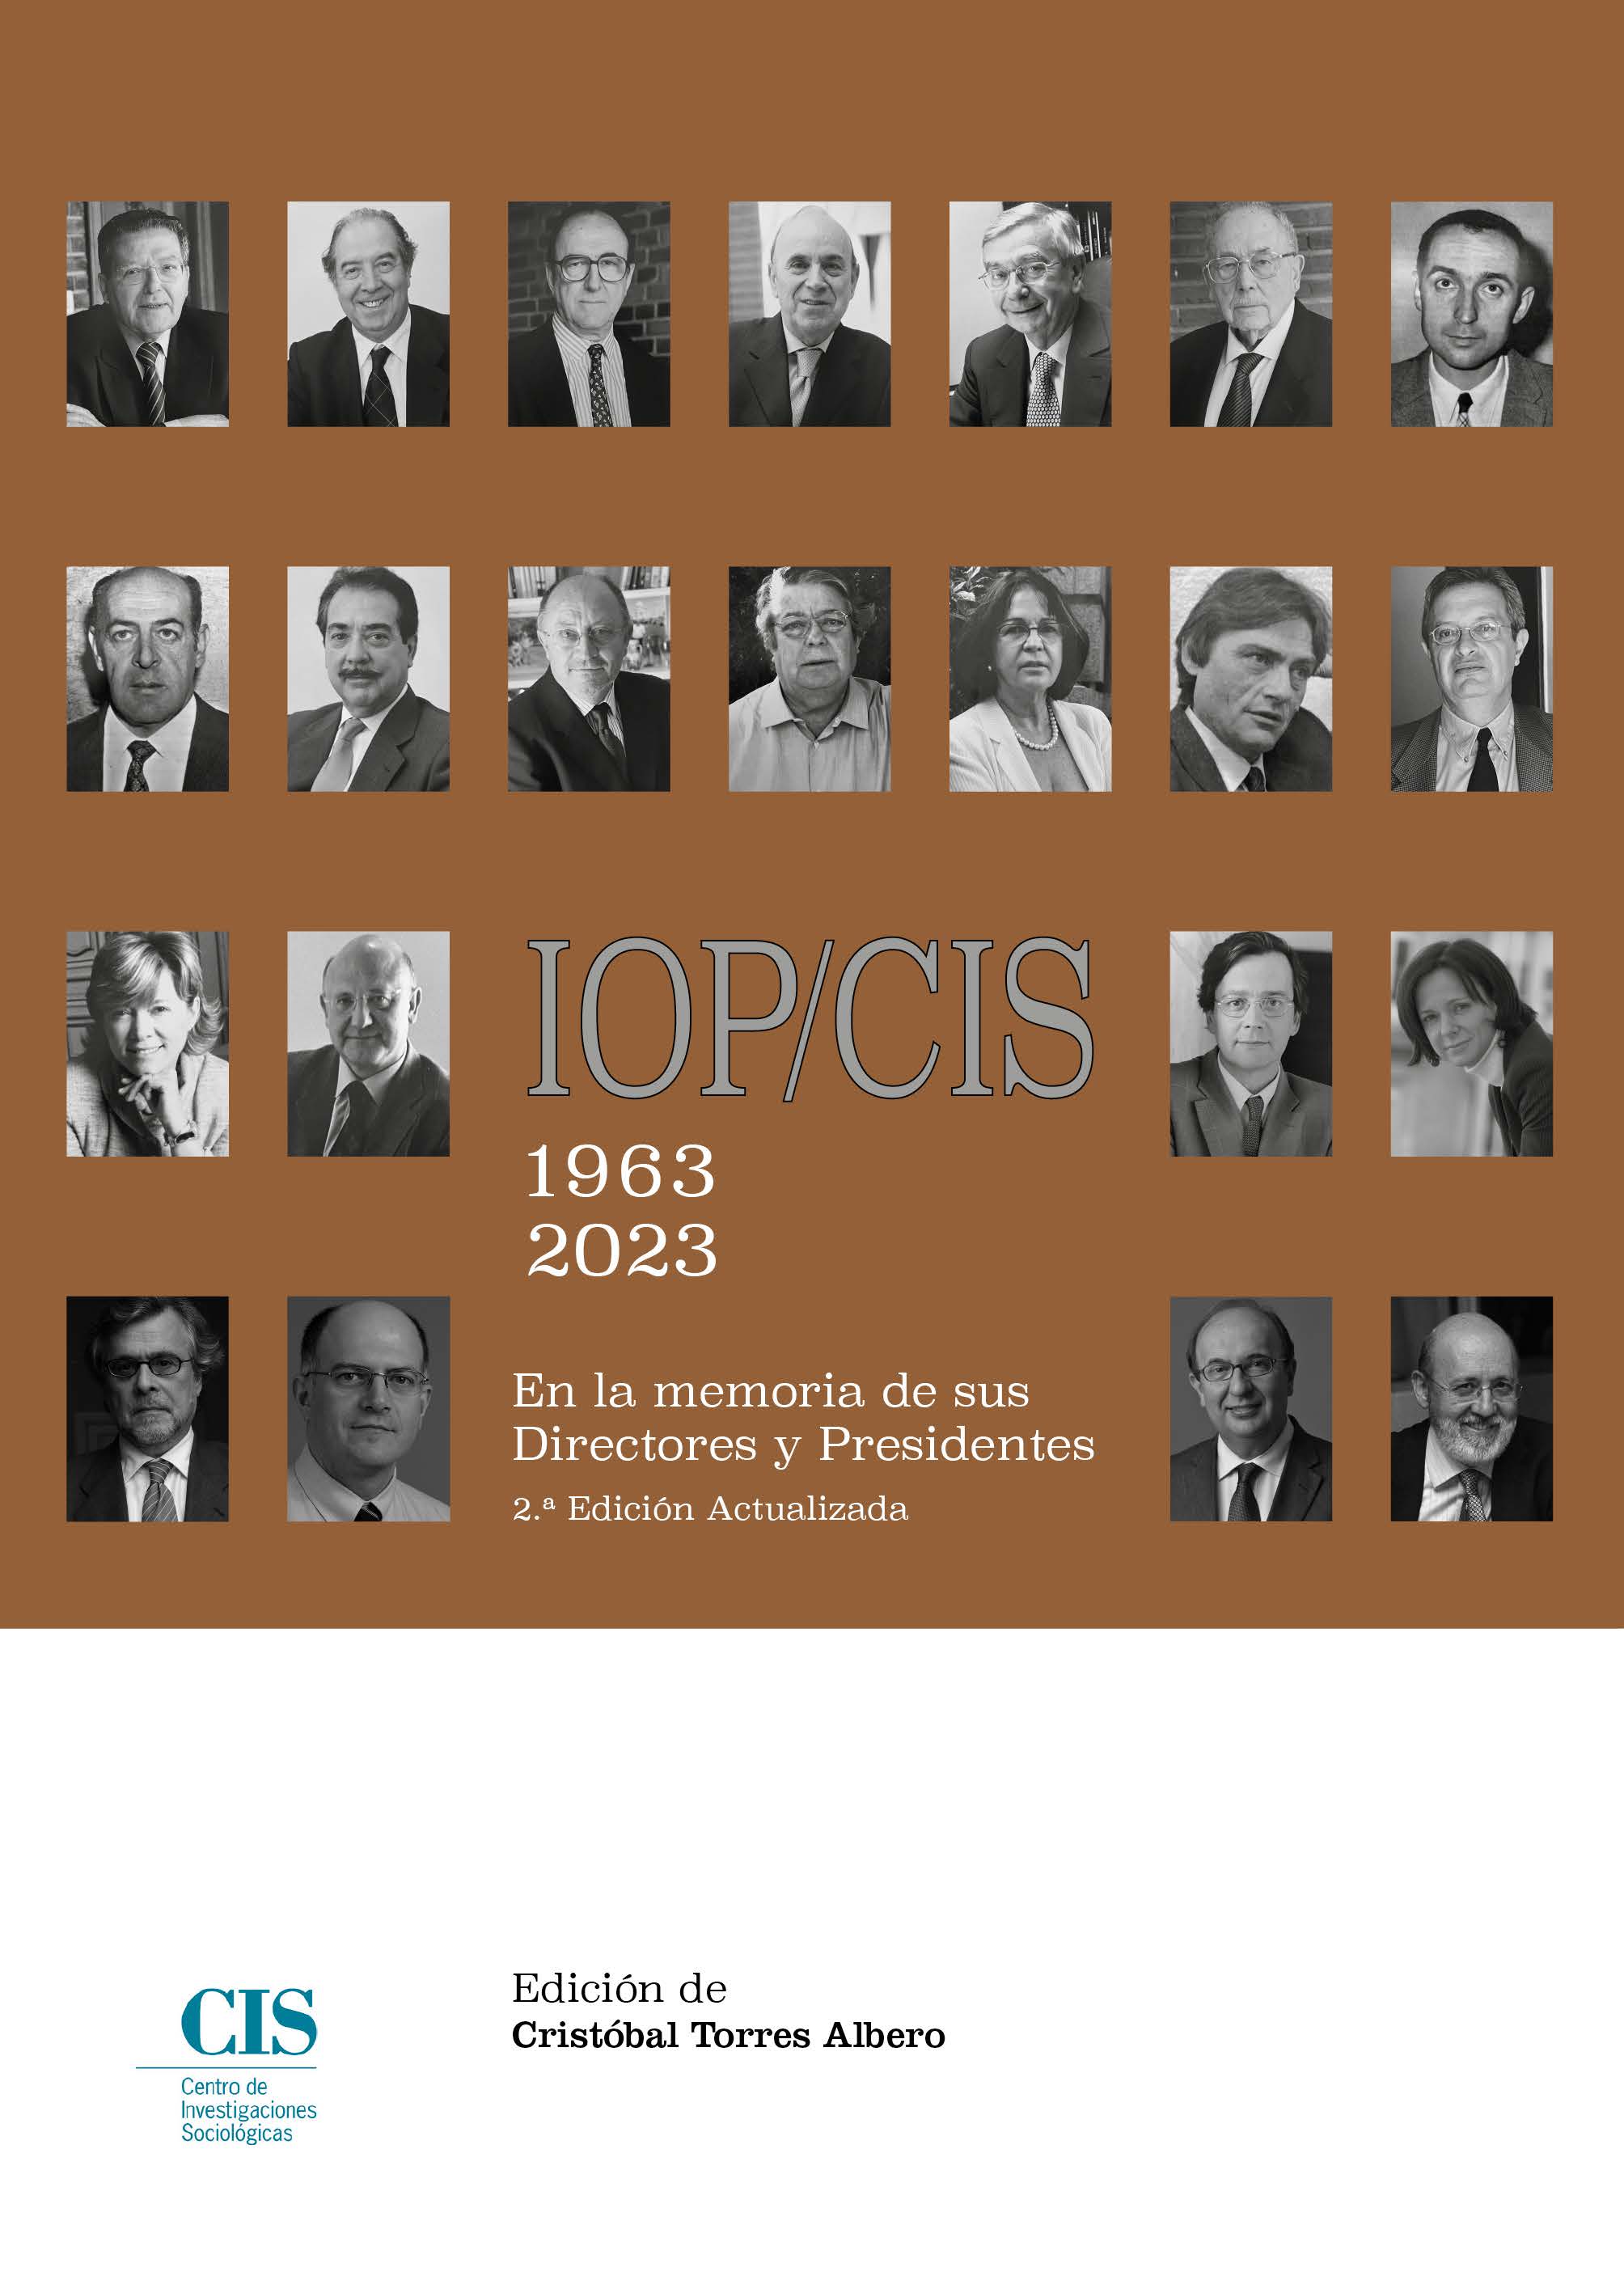 IOP-CIS 1963-2023